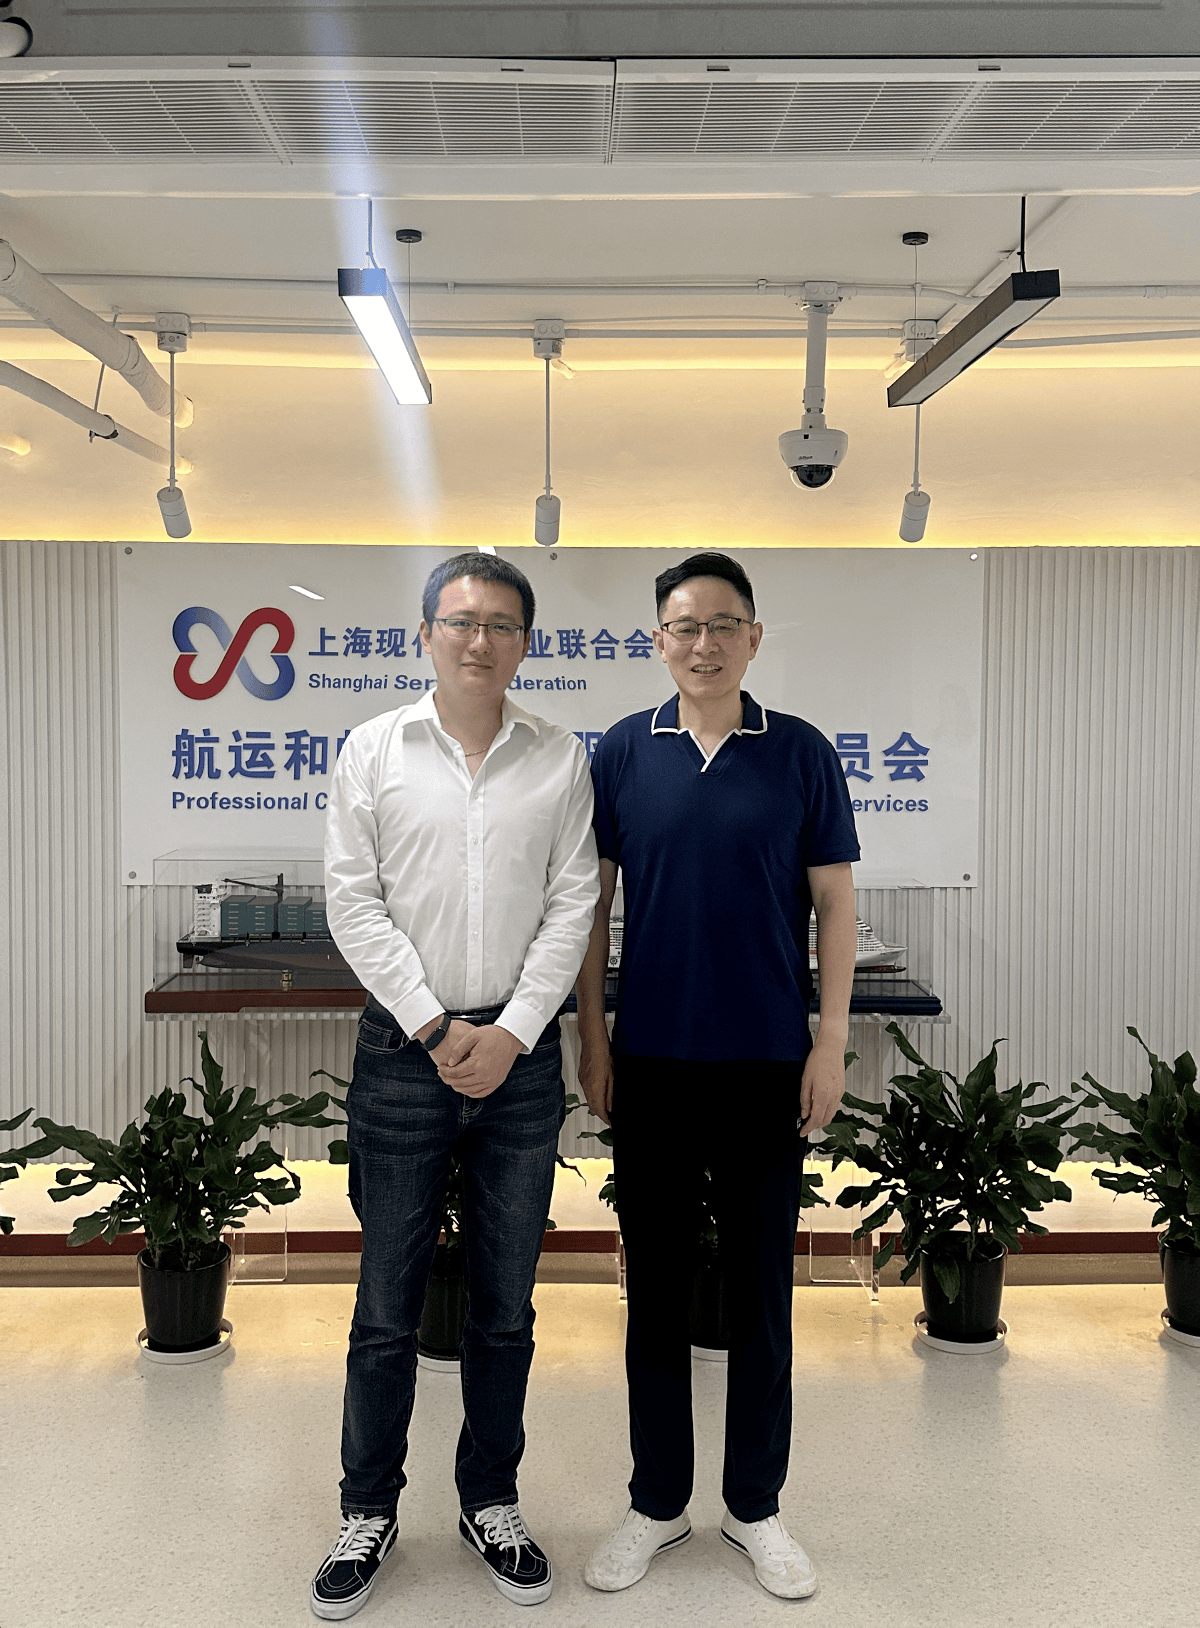 玺乐豆集团董事长杨思超先生出席上海国际邮轮节专班会议